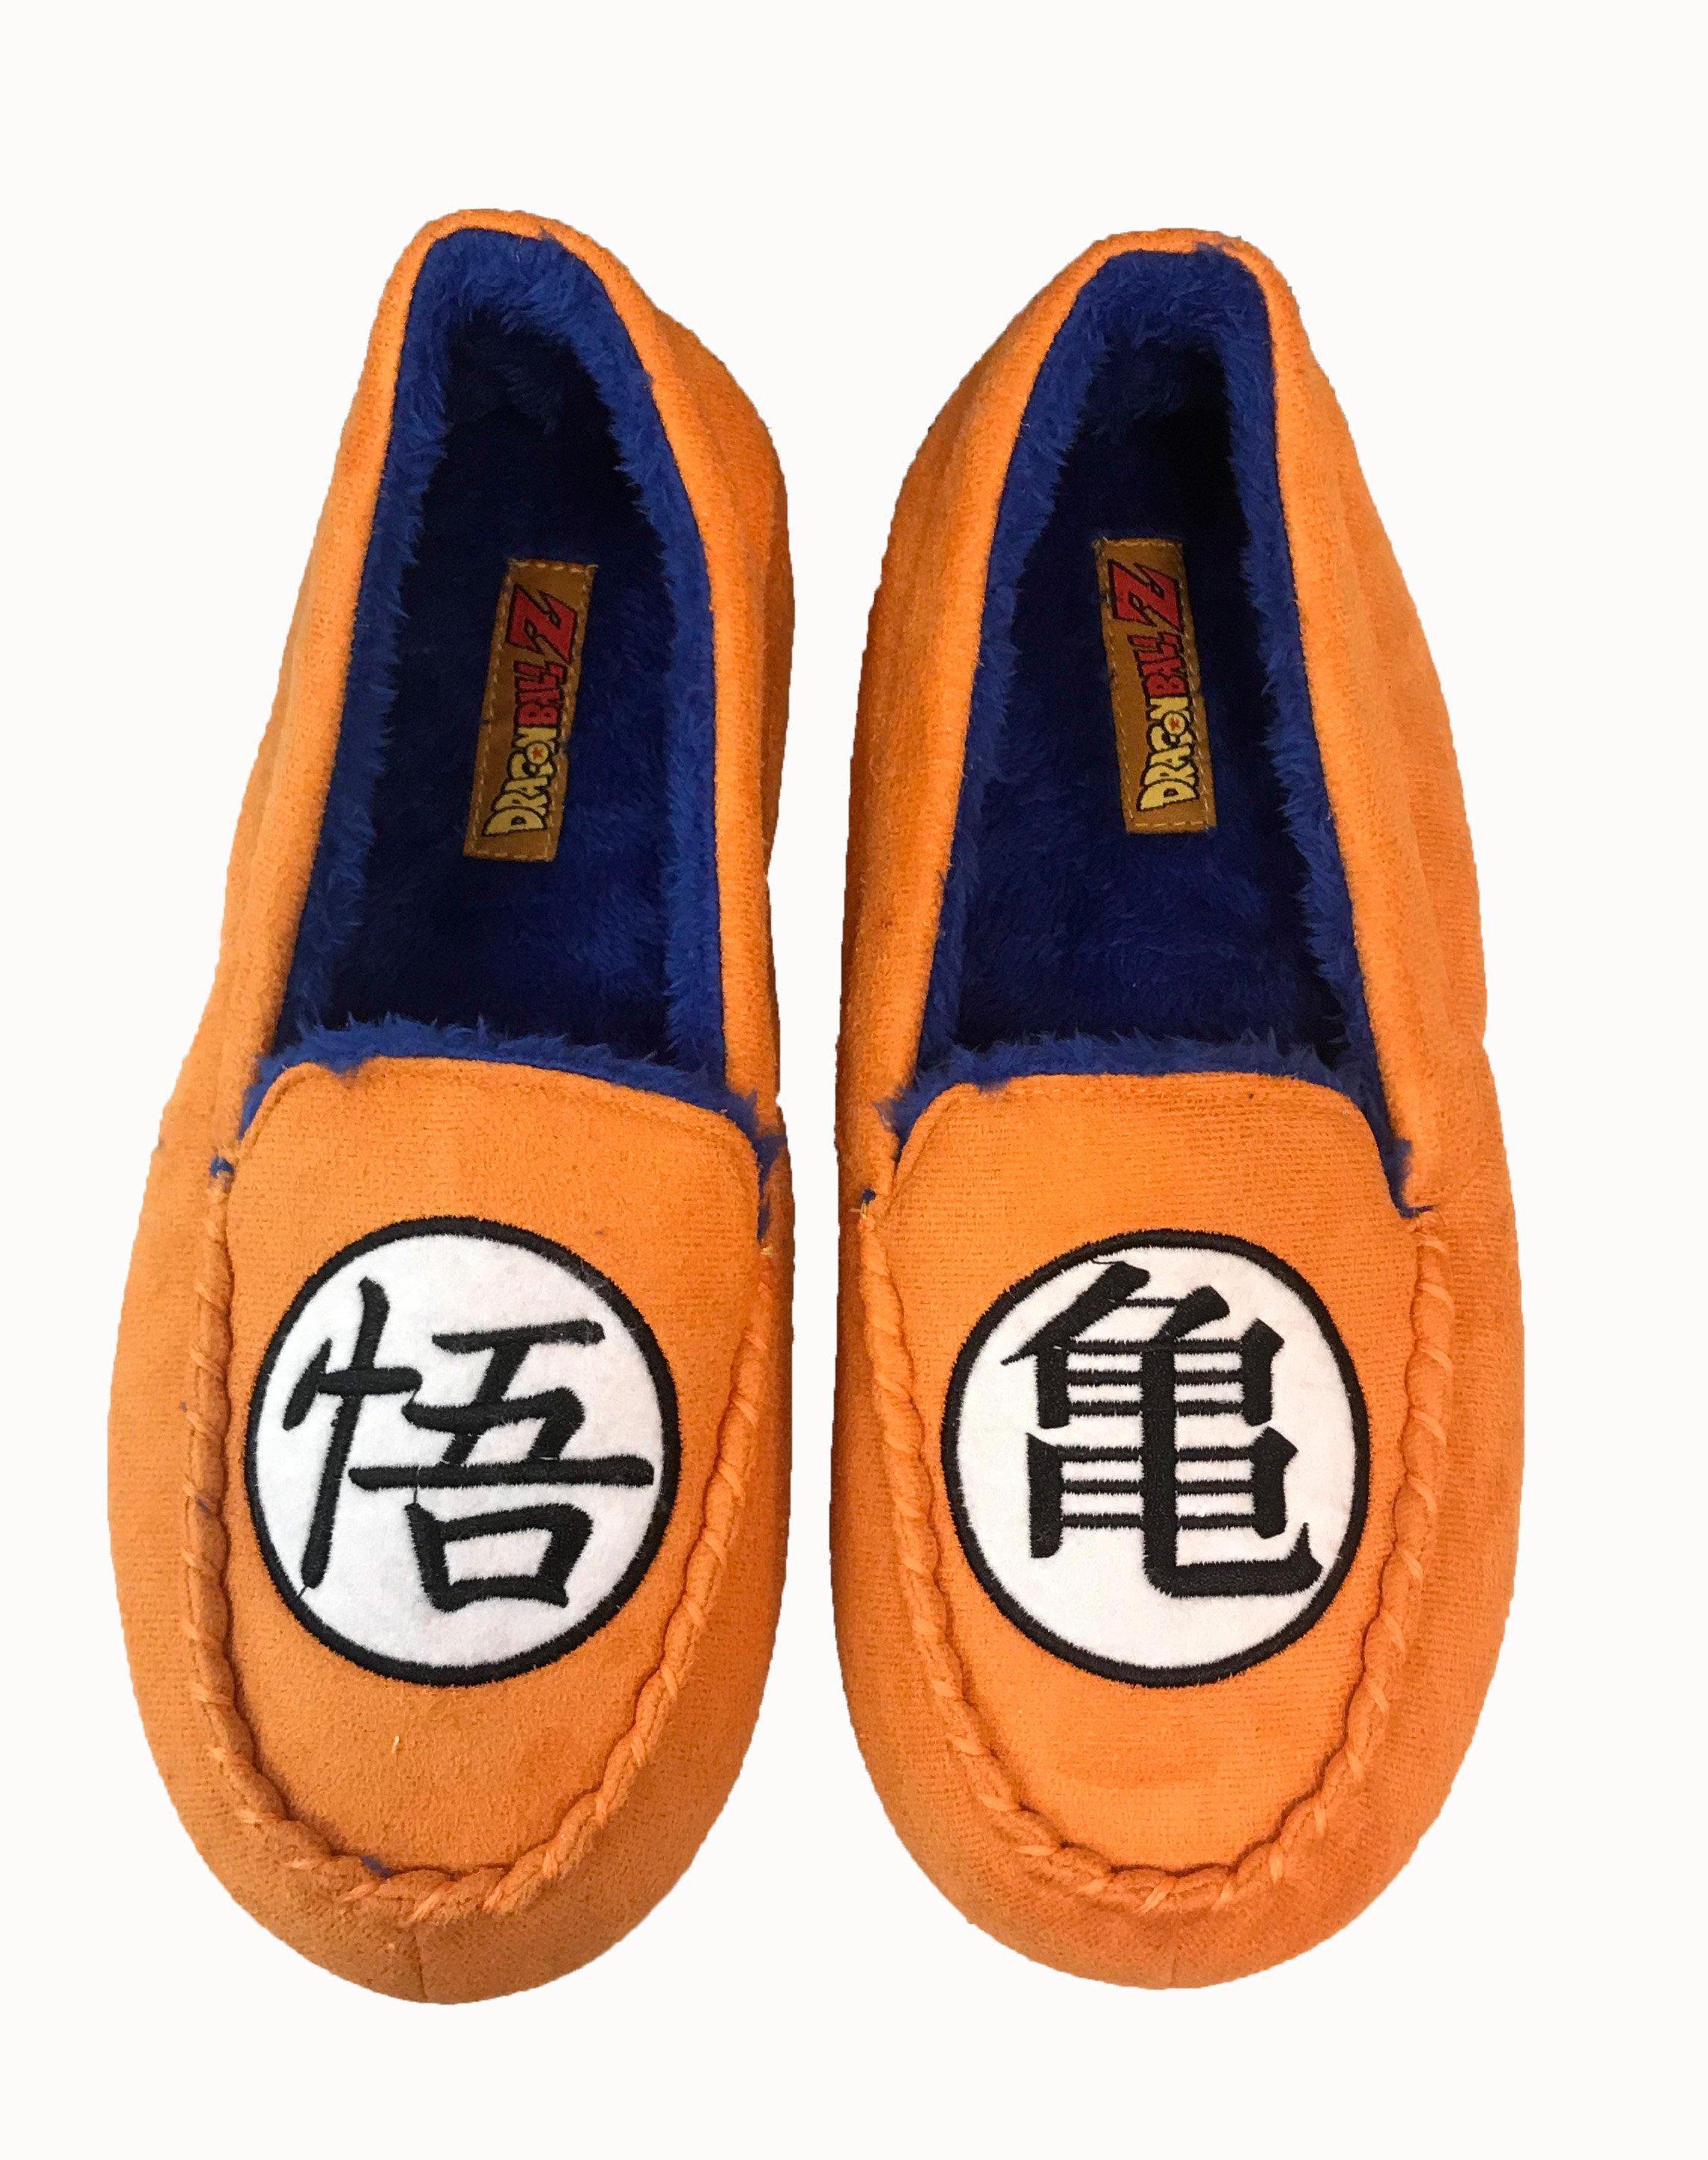 dragon ball goku shoes